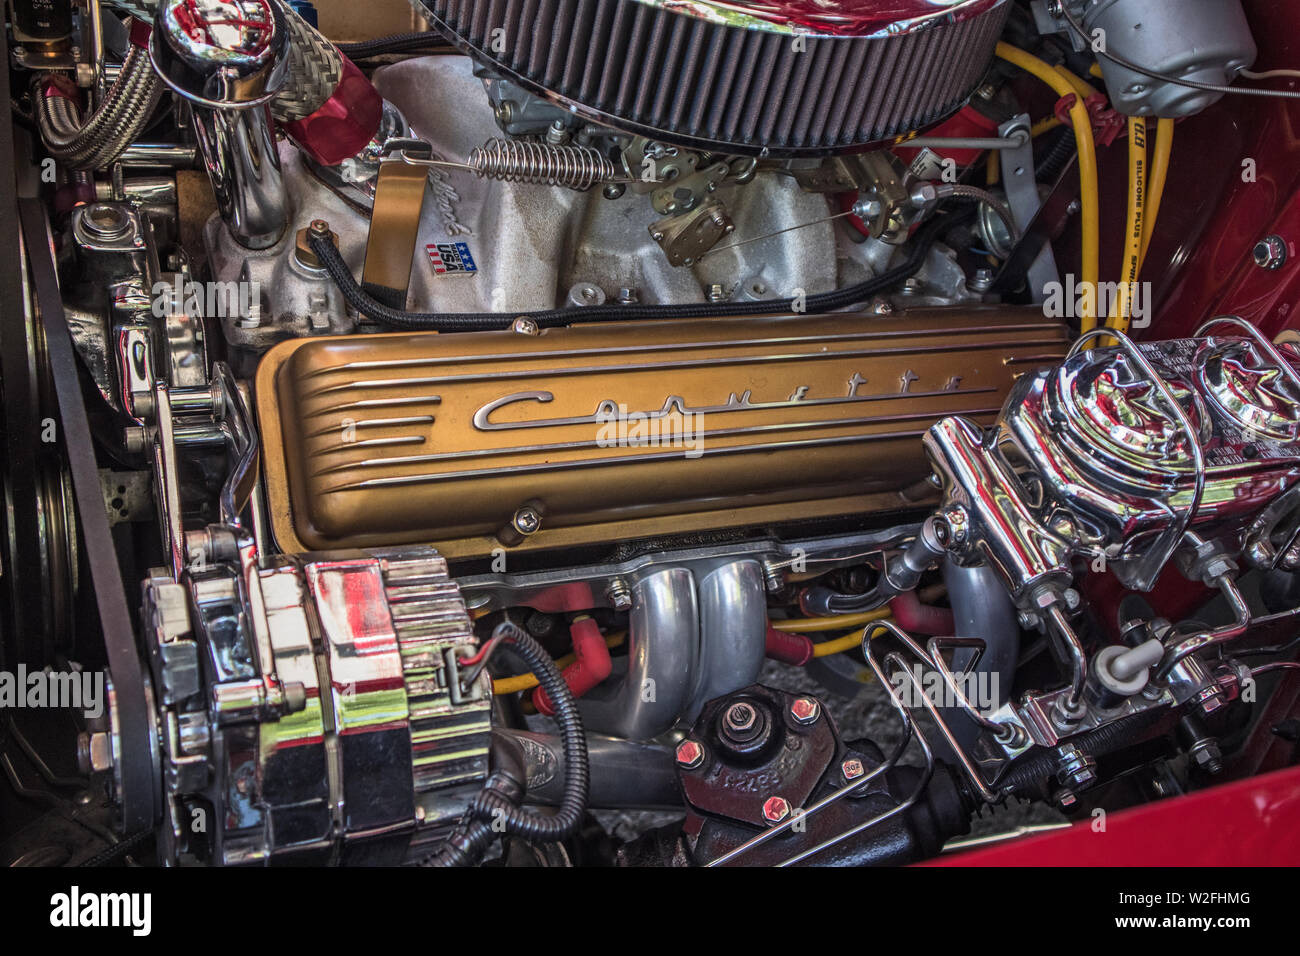 Sixties Corvette engine. Stock Photo